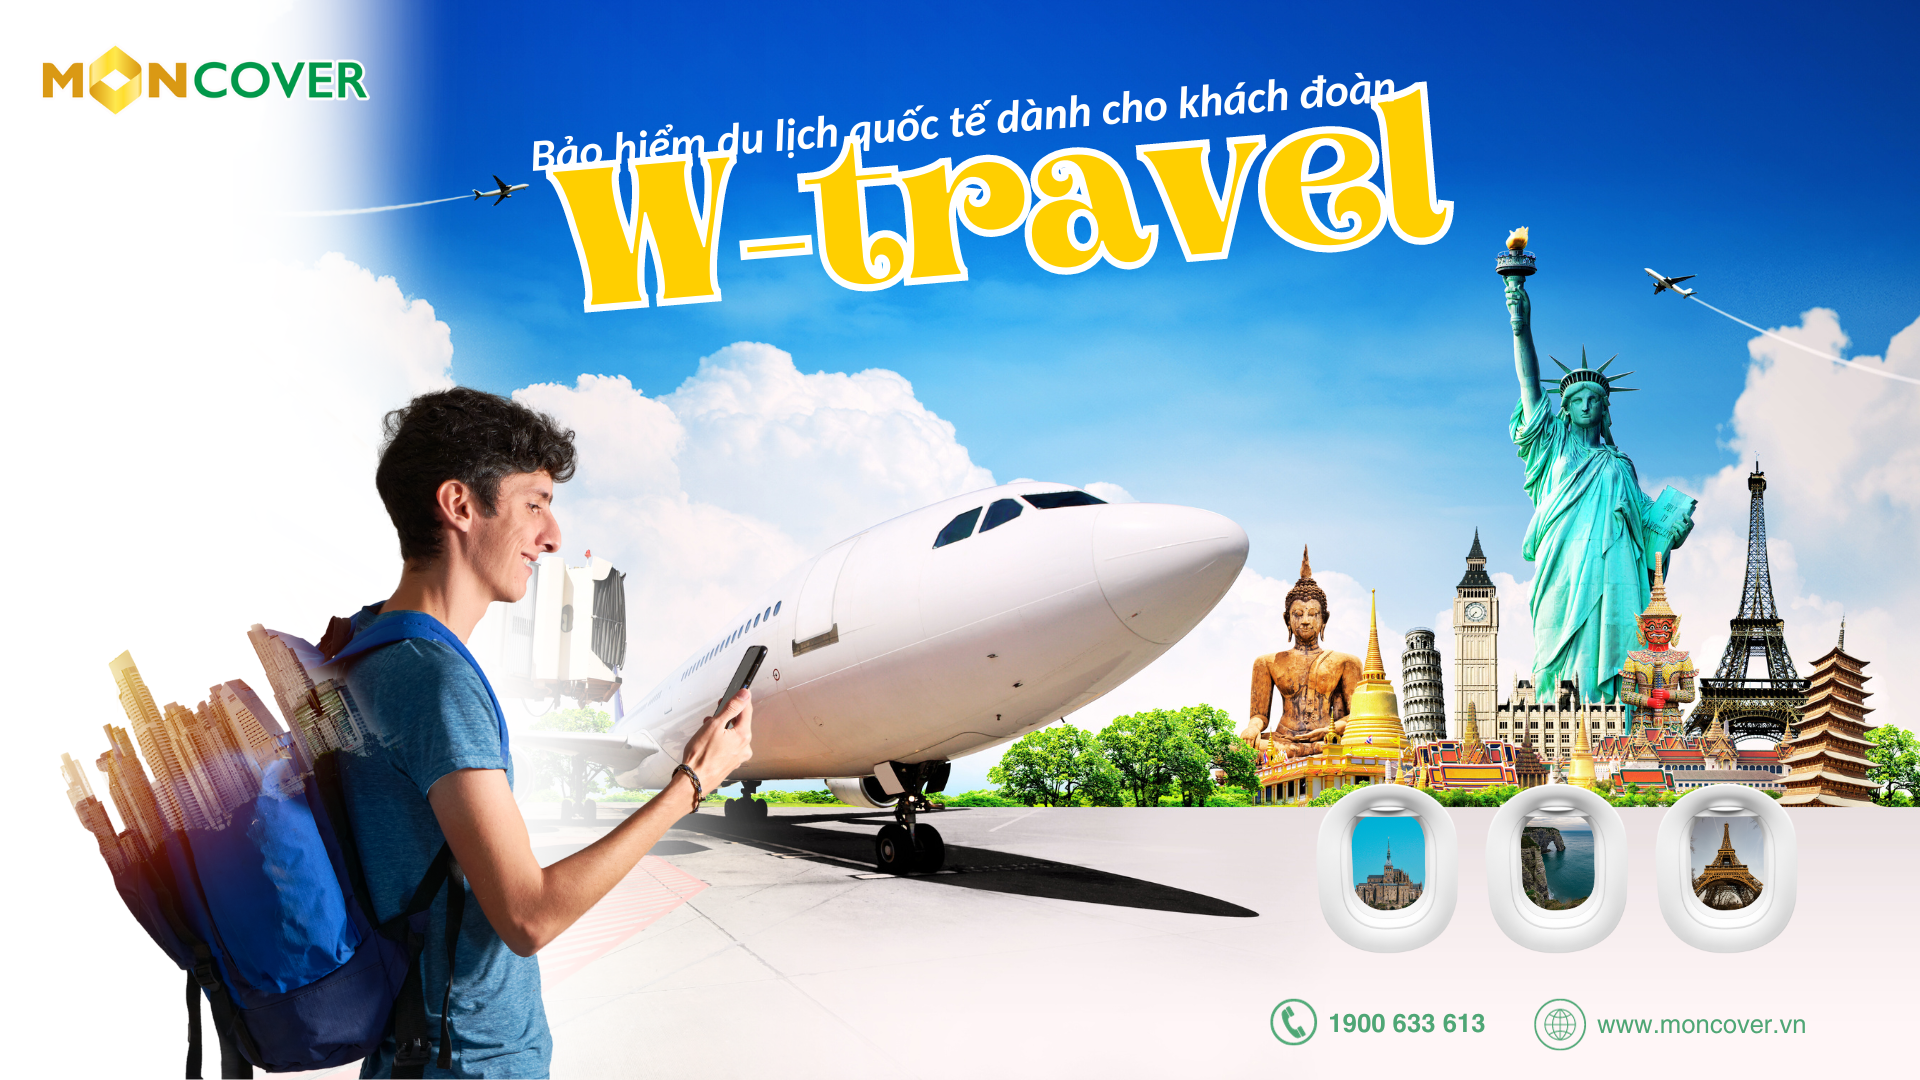 W-travel Bảo hiểm du lịch quốc tế đoàn